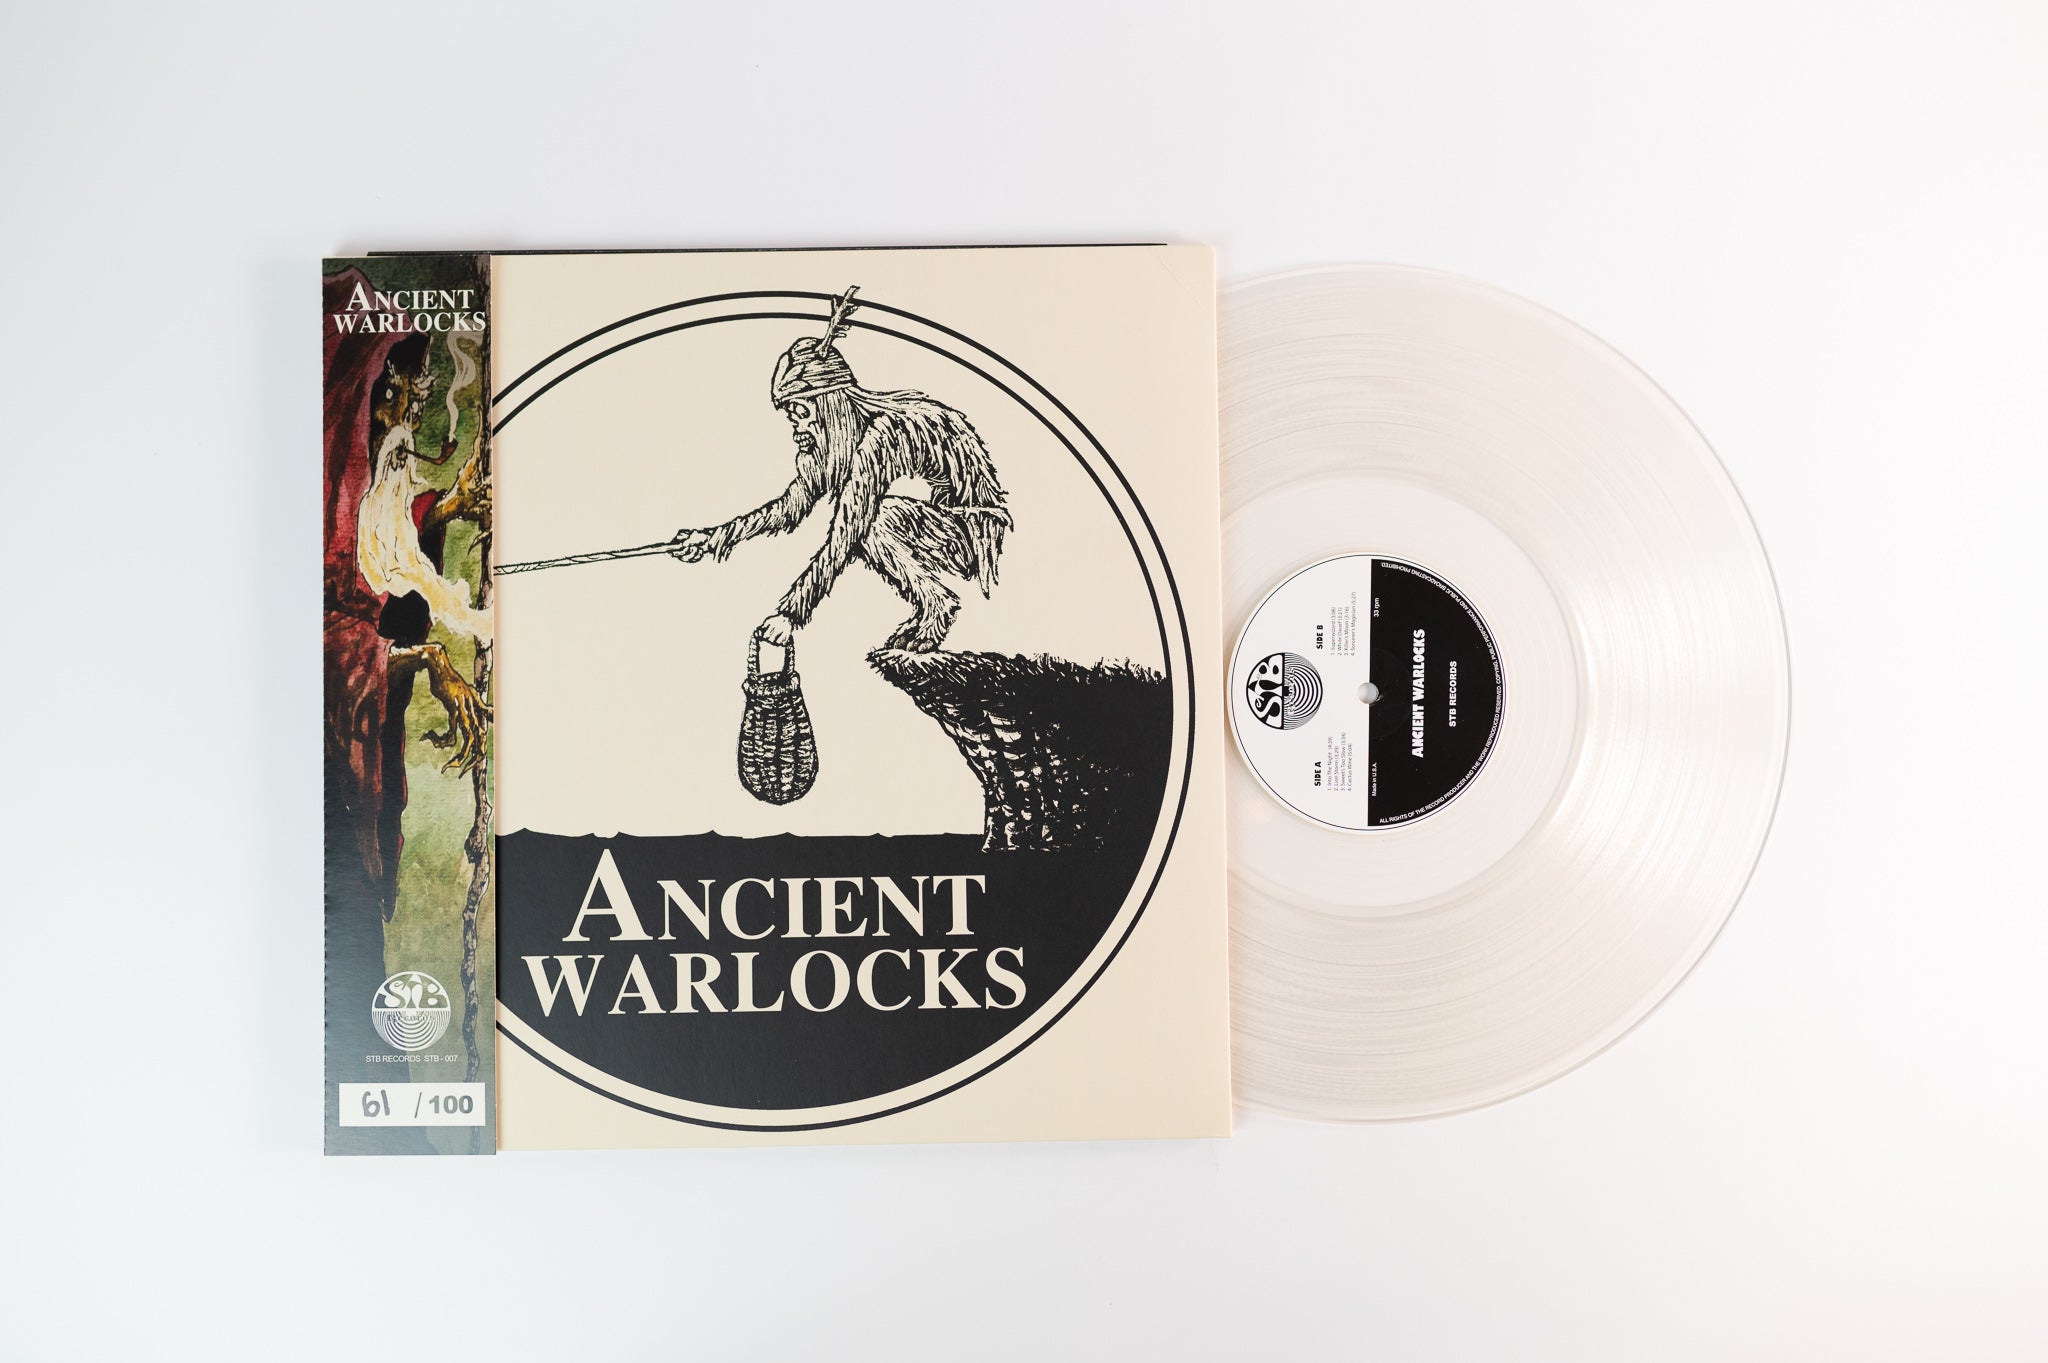 Ancient Warlocks - Ancient Warlocks on STB Ltd Numbered Ultra Clear